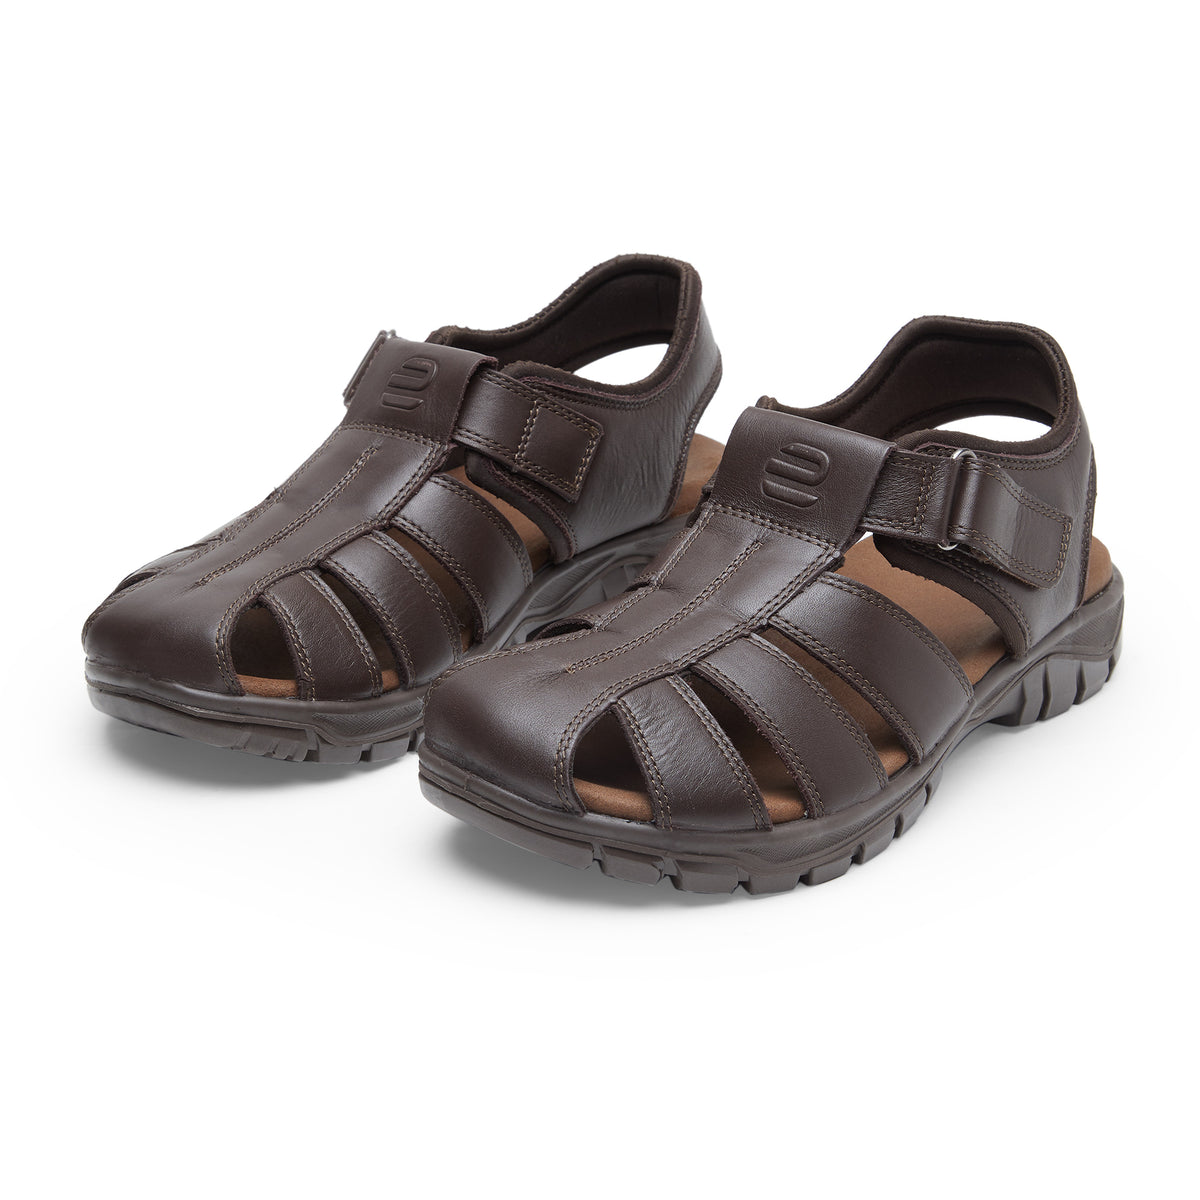 Buy Spring Field ES-02 Men Dark Brown Sandals | Ergon Style